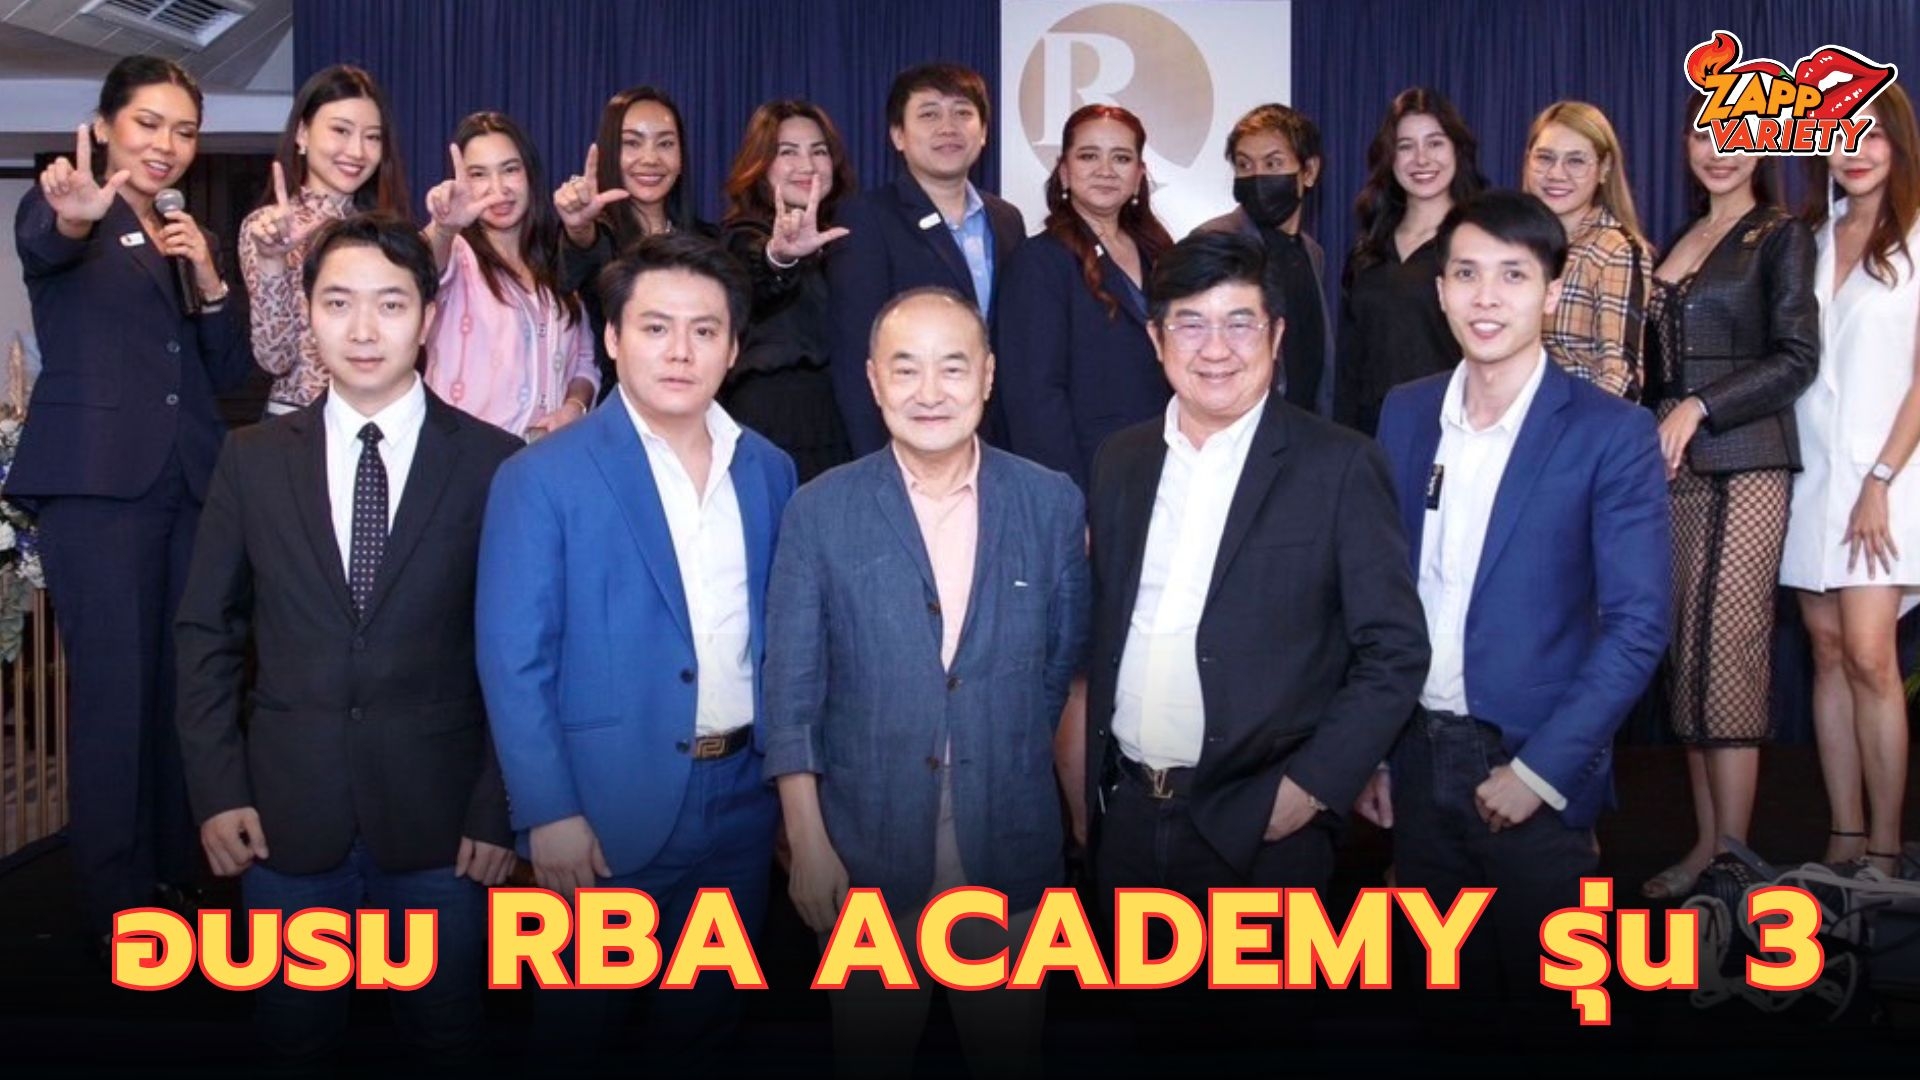 โอที - รัฐธนินท์ นำทีมปังสุด “ดารา เซเลบ นักธุรกิจดัง” อบรมหลักสูตร RBA Academy รุ่น 3